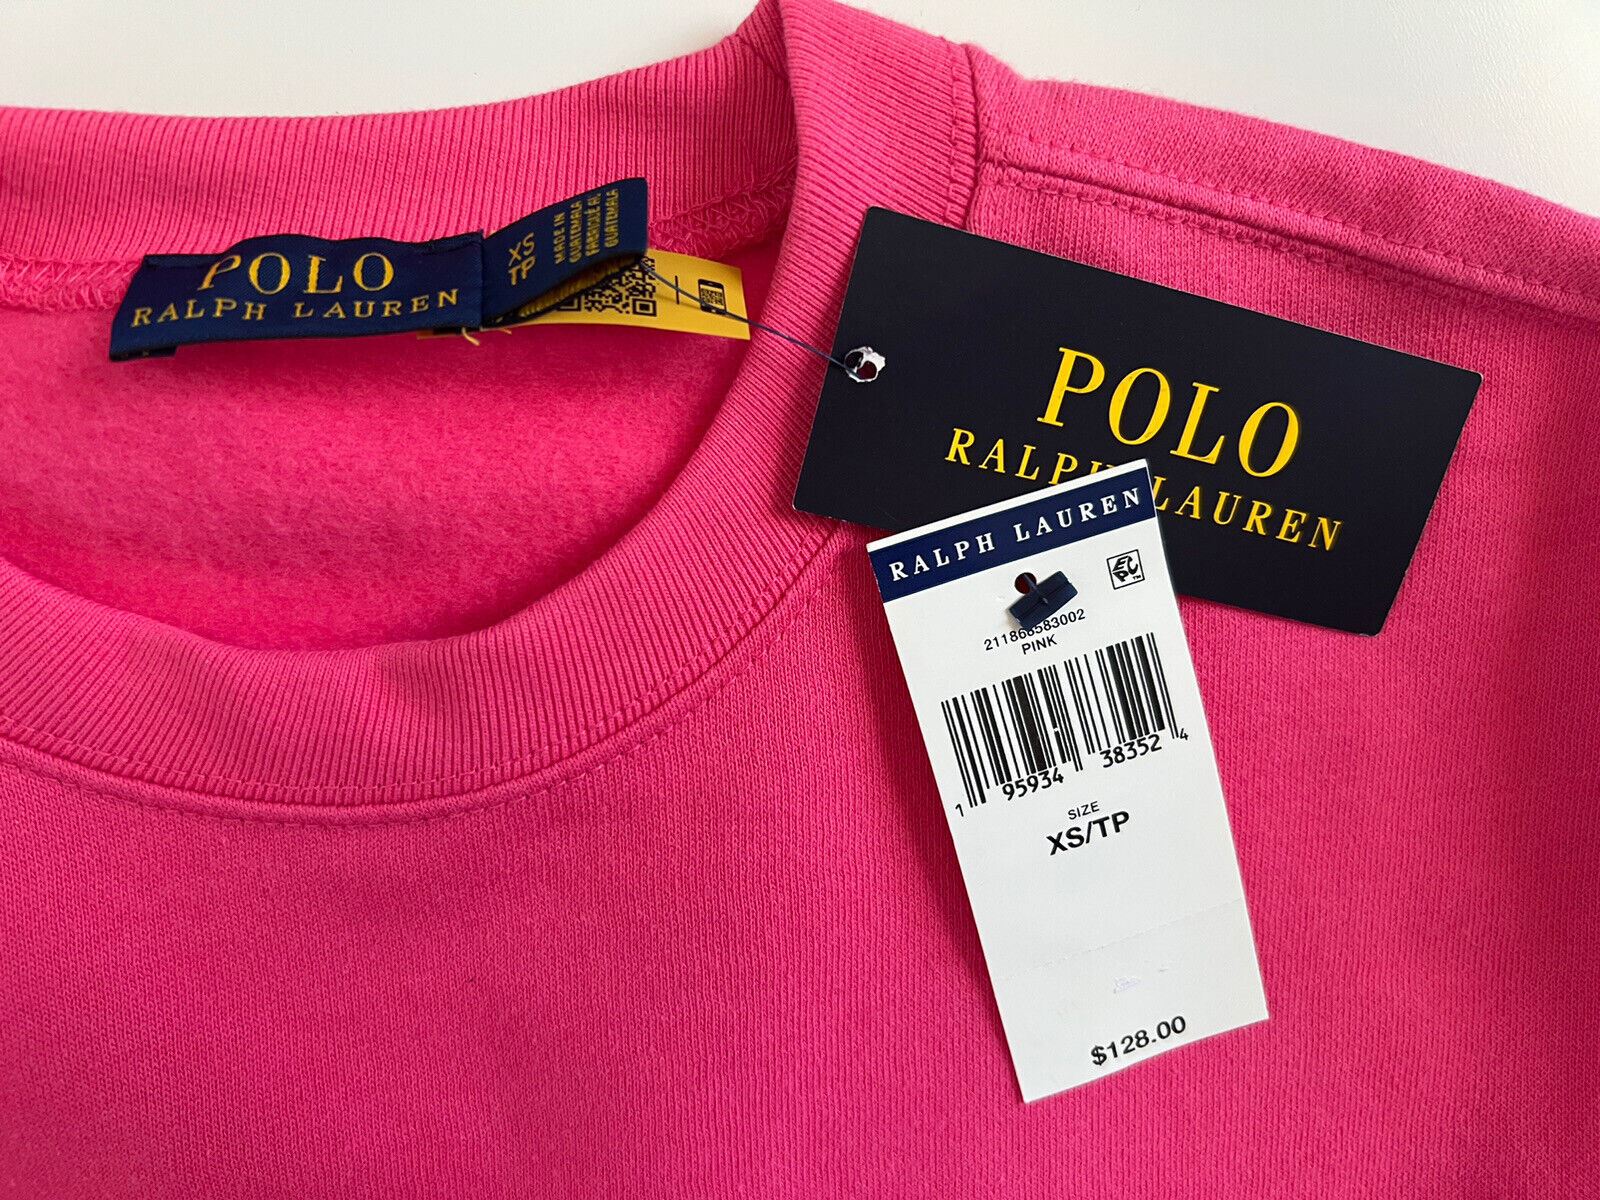 NWT $128 Polo Ralph Lauren Women's Pink Sweatshirt XS